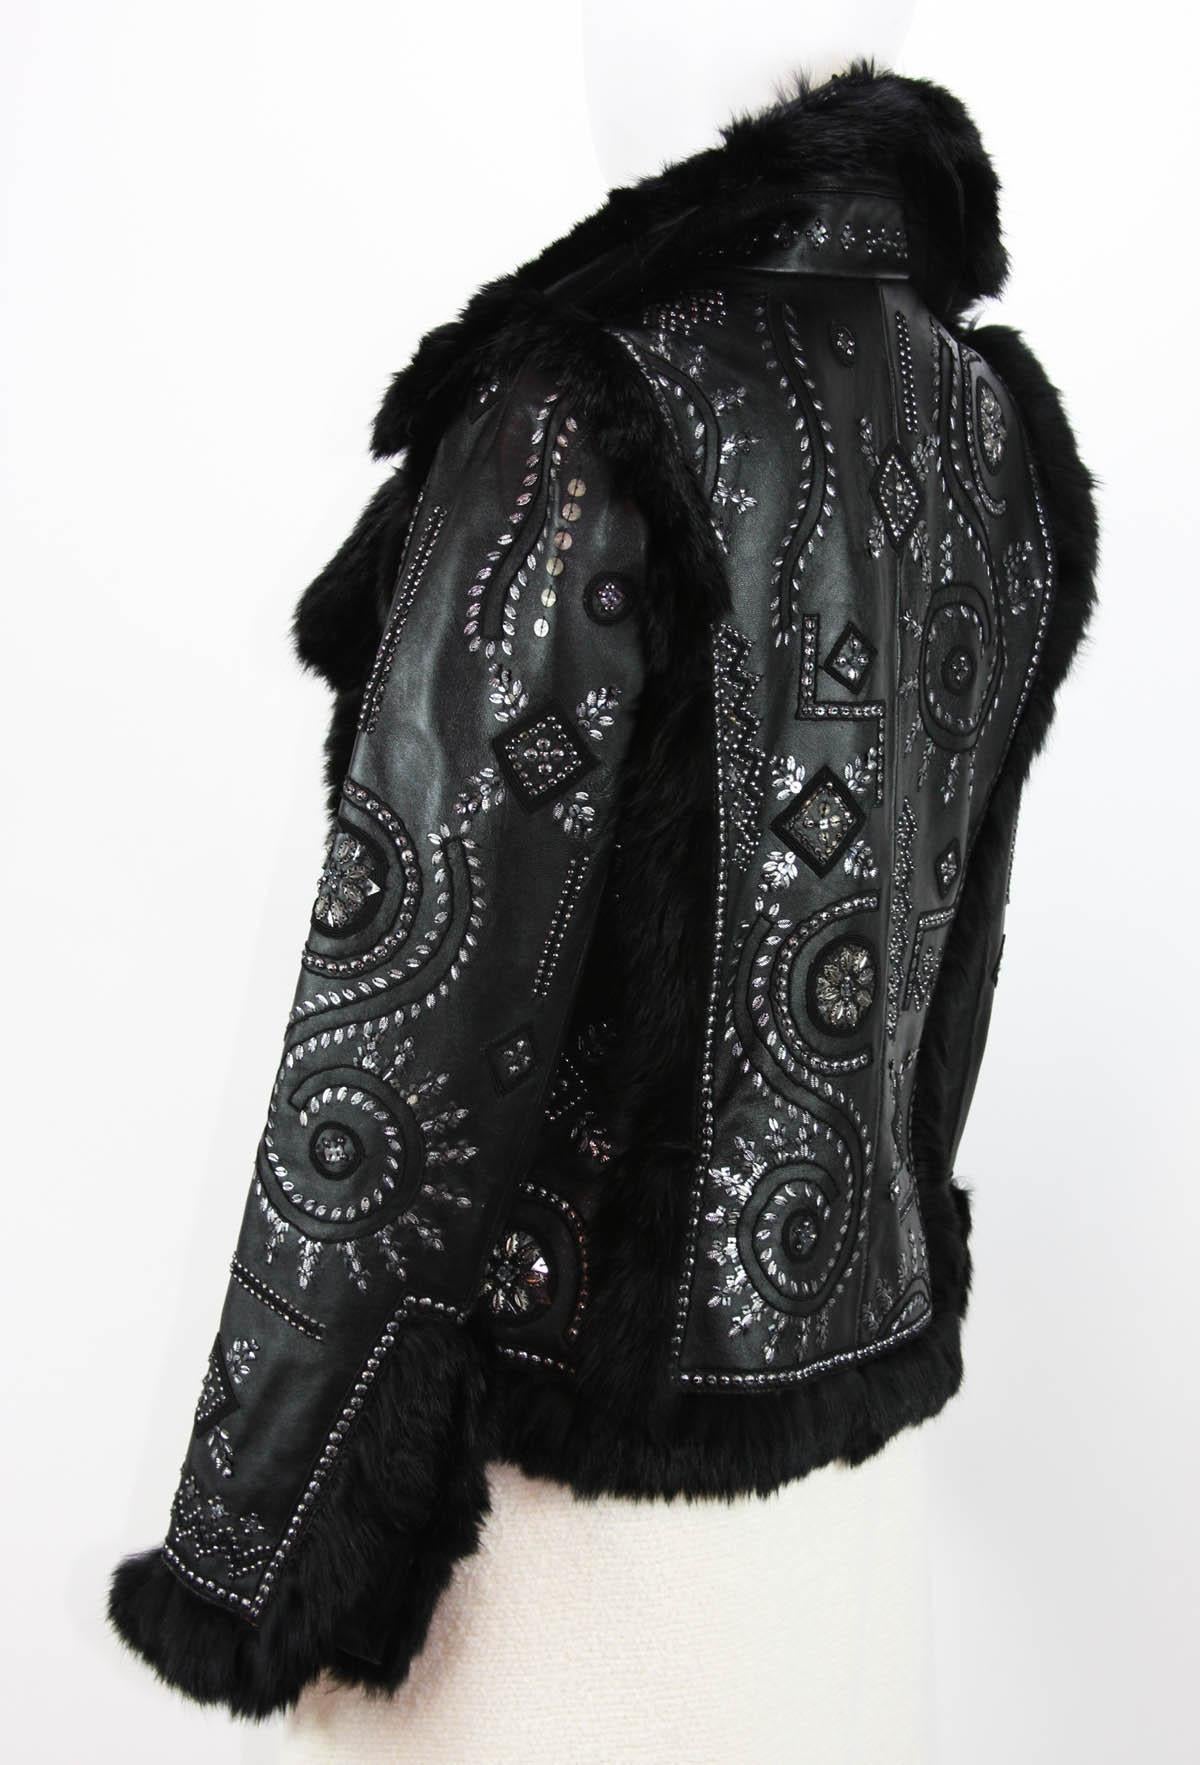 OSCAR DE LA RENTA Embellished Leather Jacket with FOX FUR US 6 For Sale 1